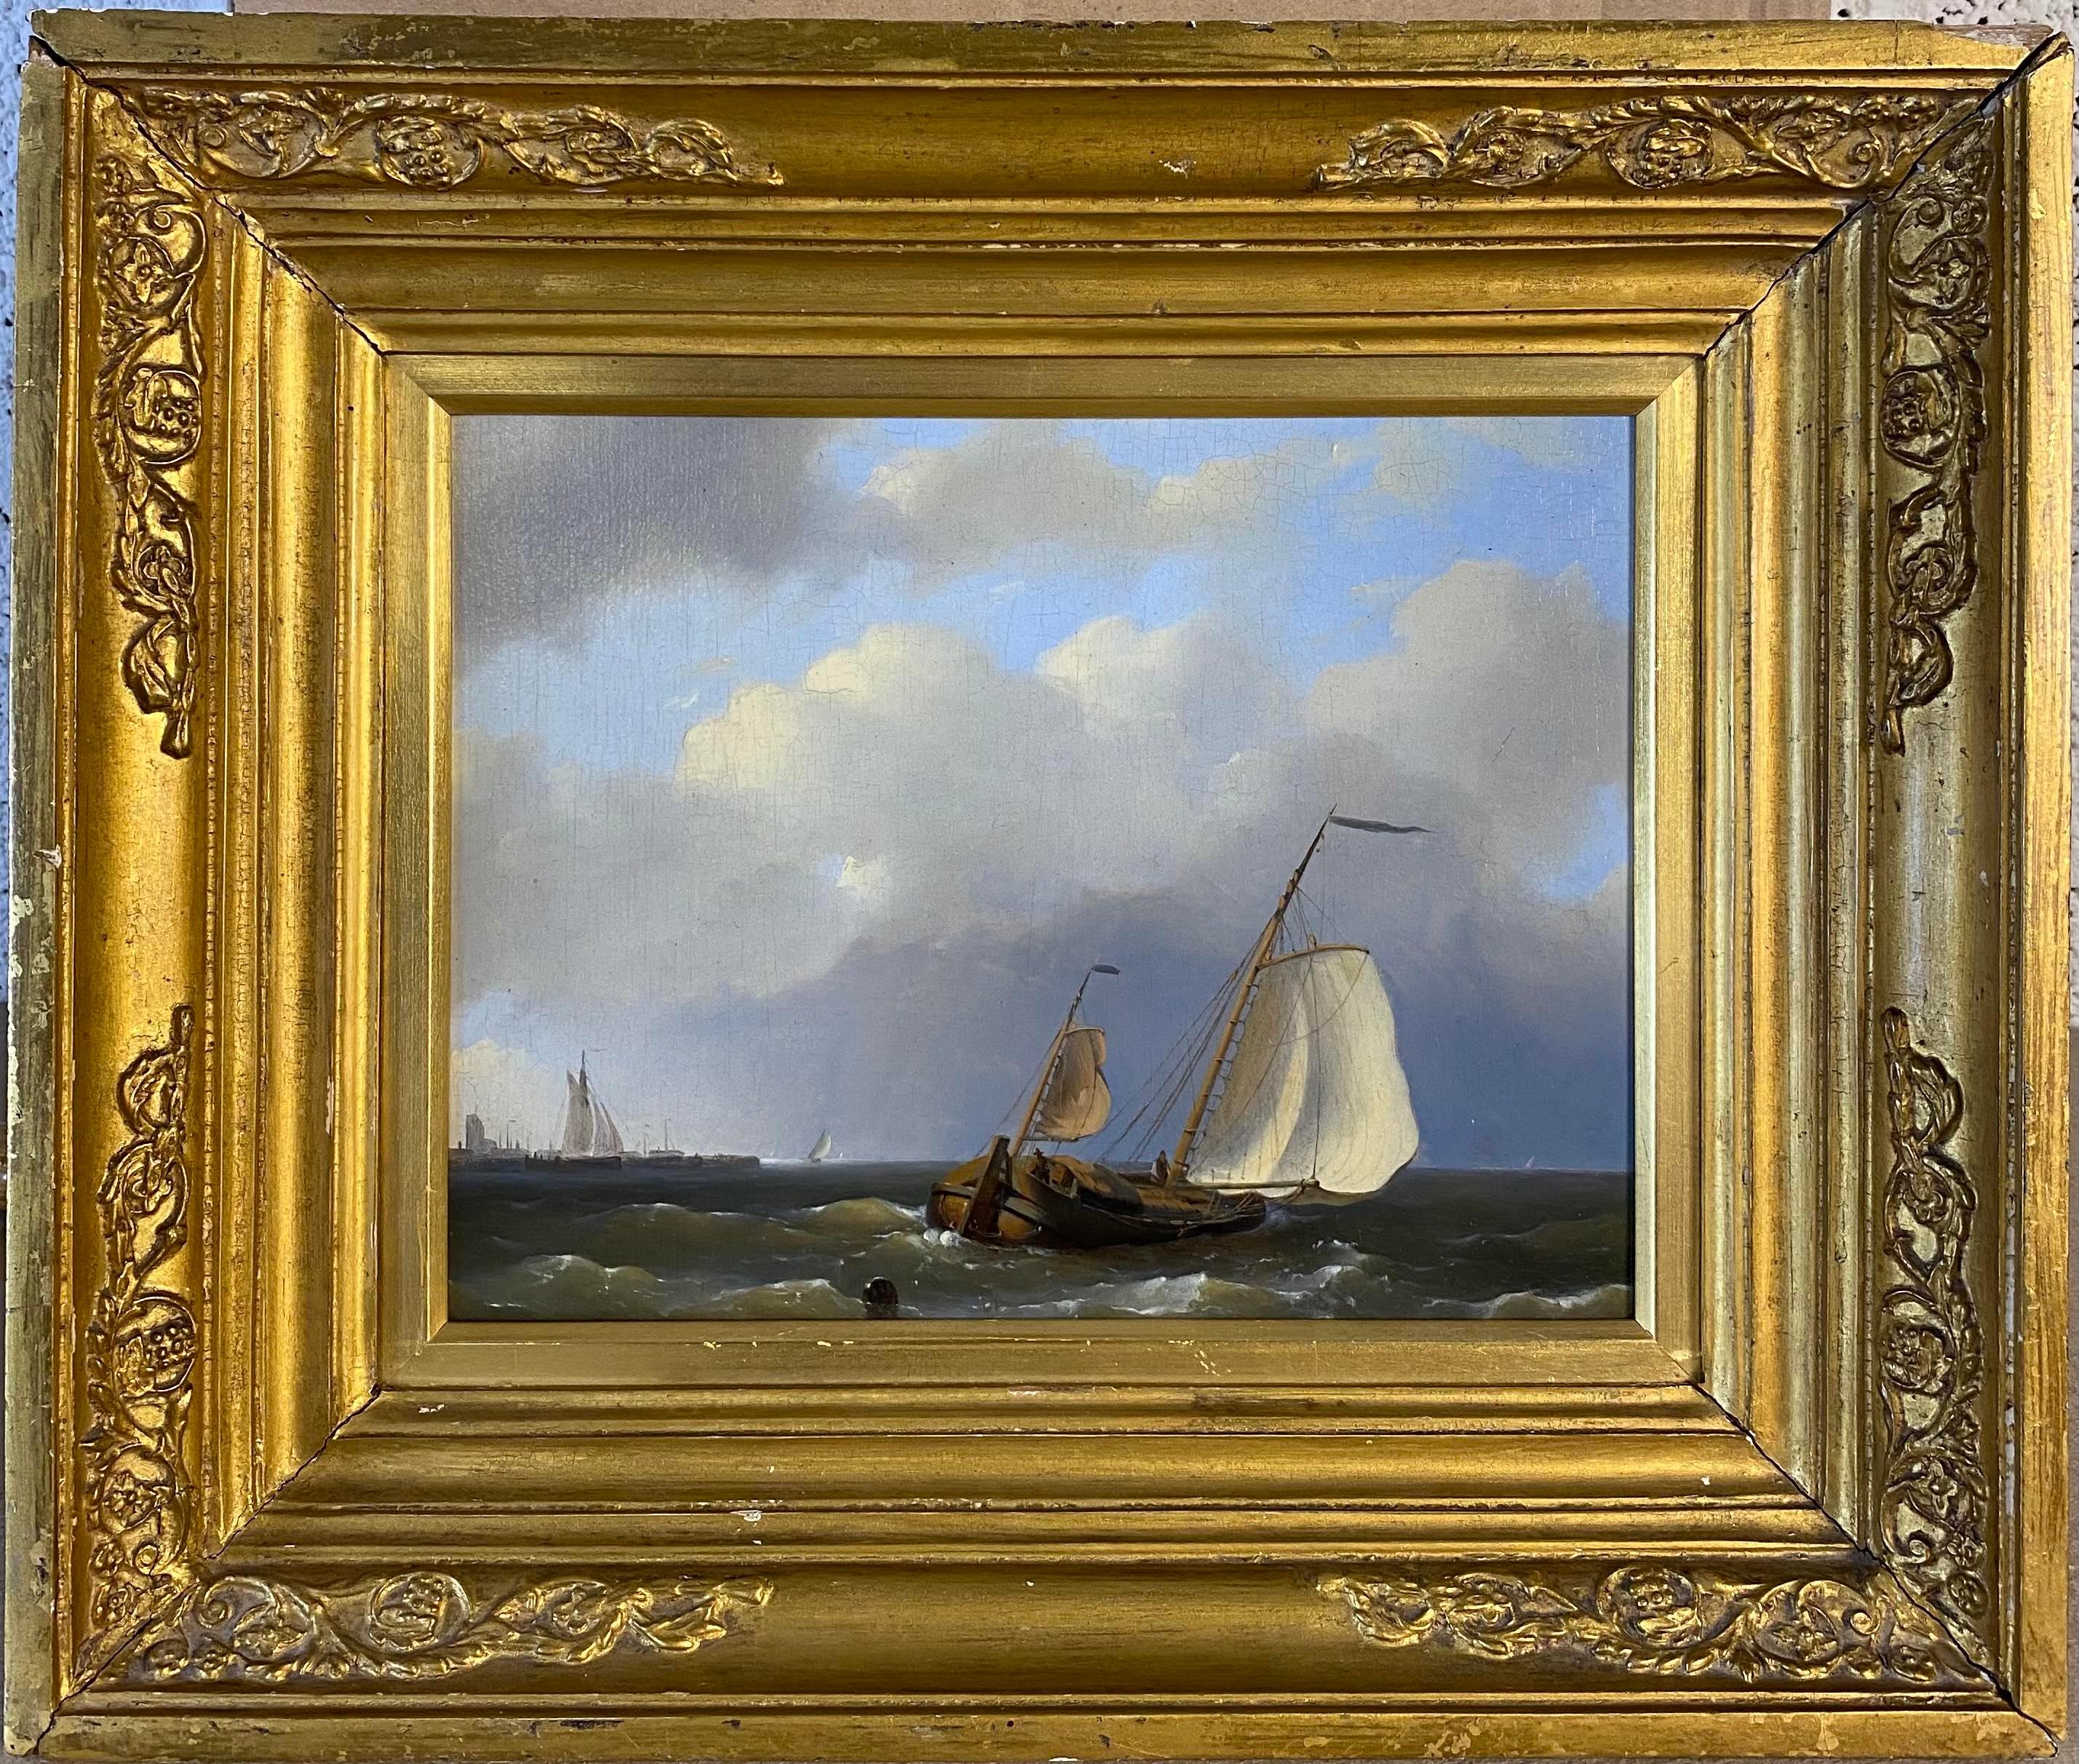 A fishing boat in choppy waters - Painting by Hermanus Koekkoek I